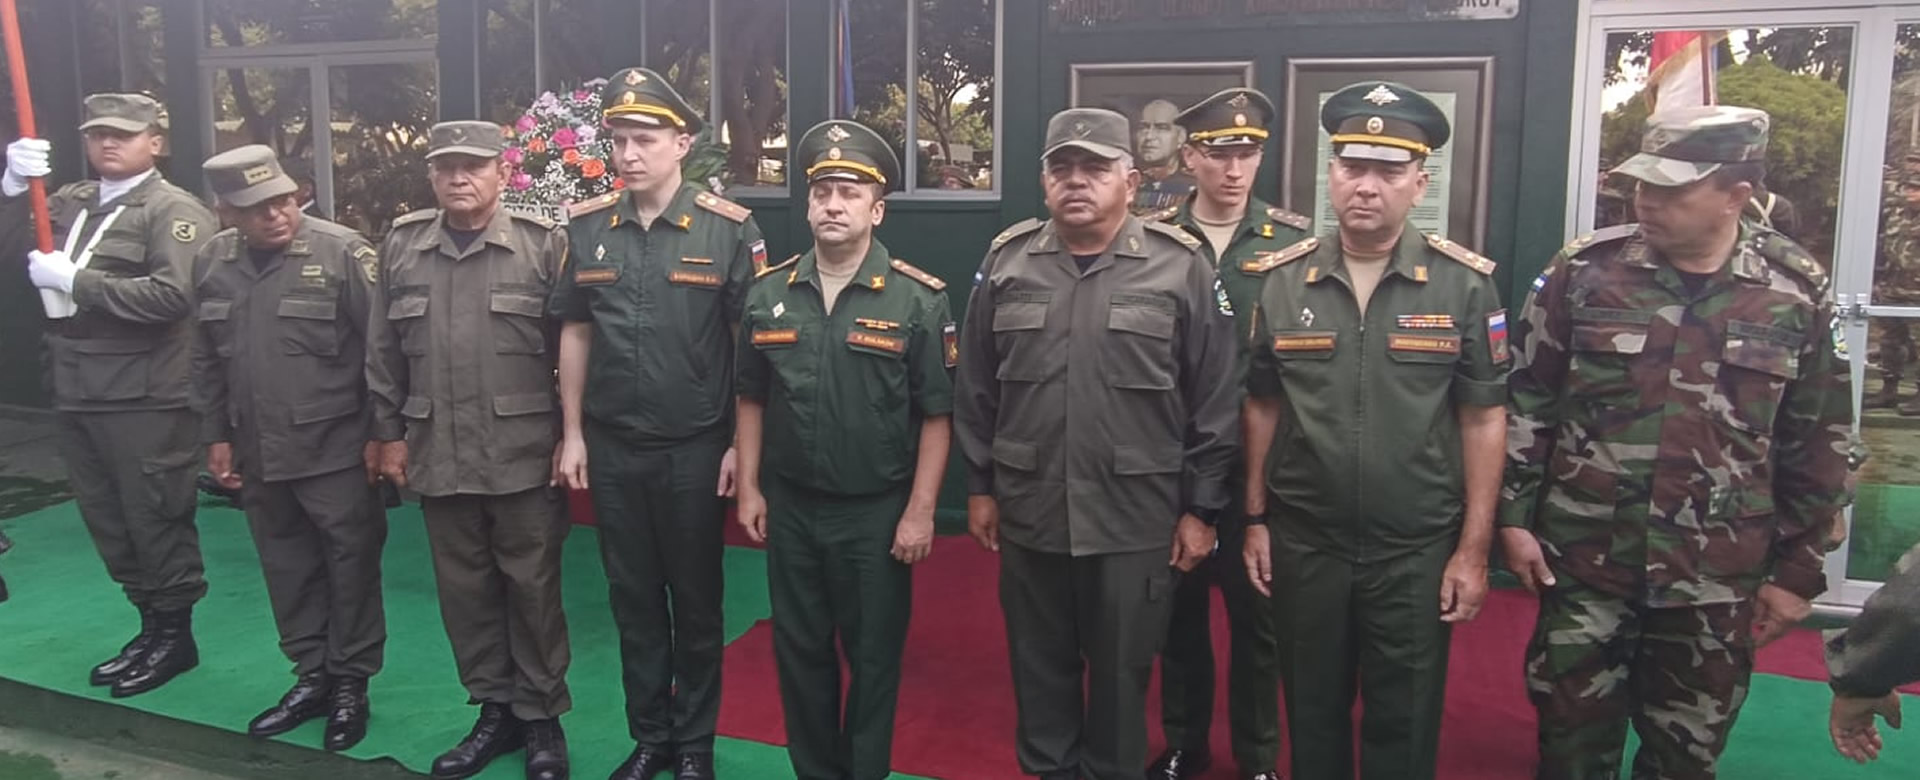 ejército nicaragua pueblo rusia